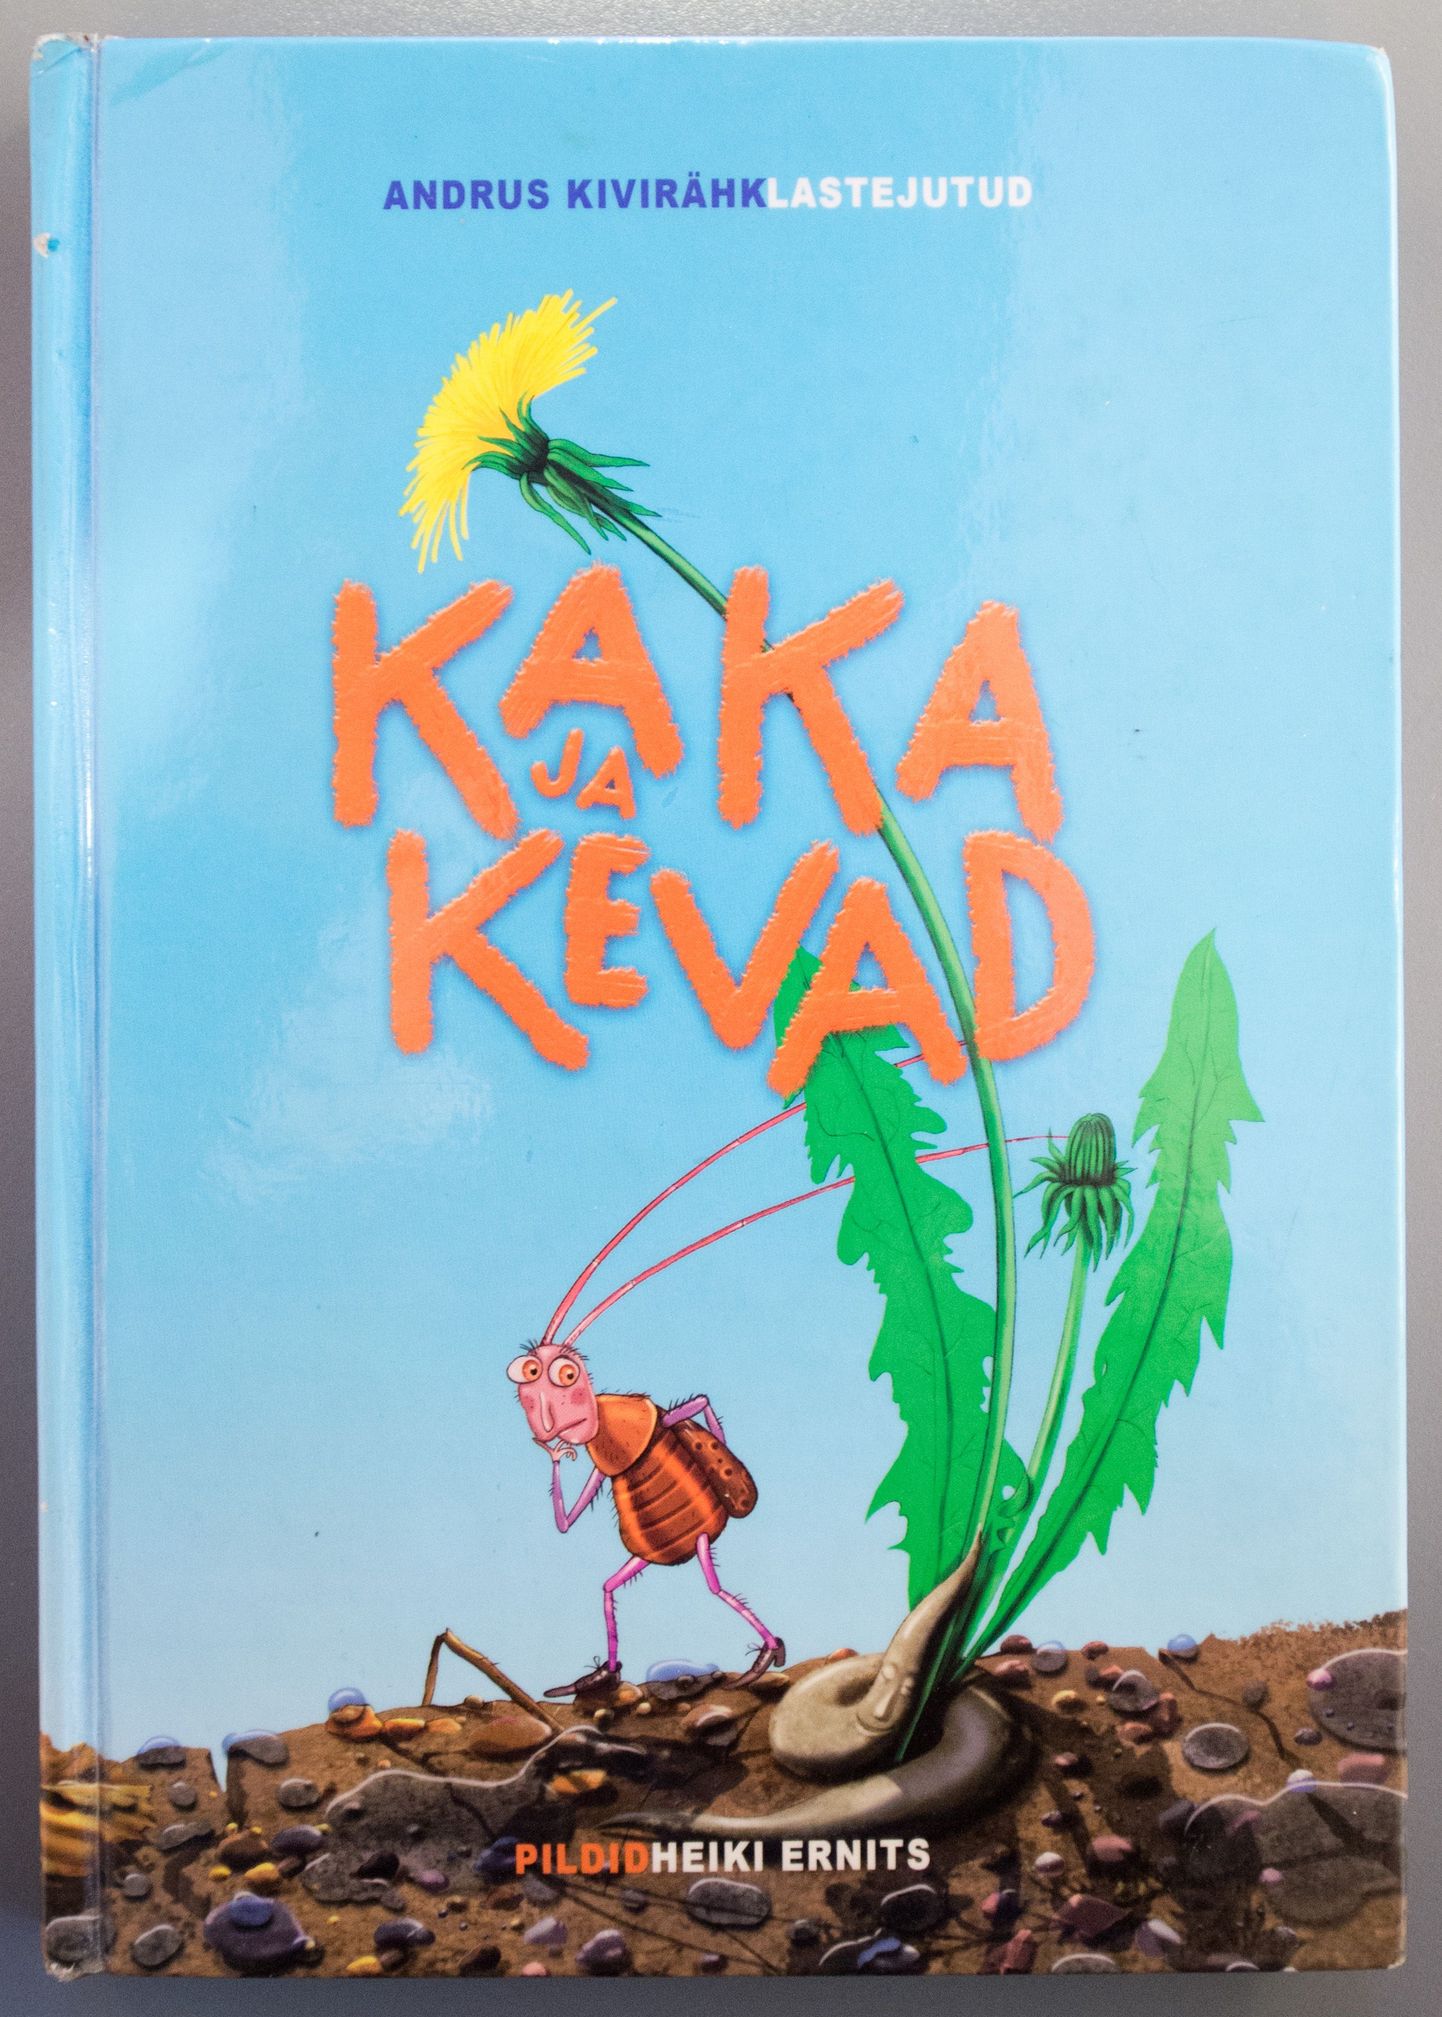 Обложка книги Андруса Кивиряхка "Какашка и весна".